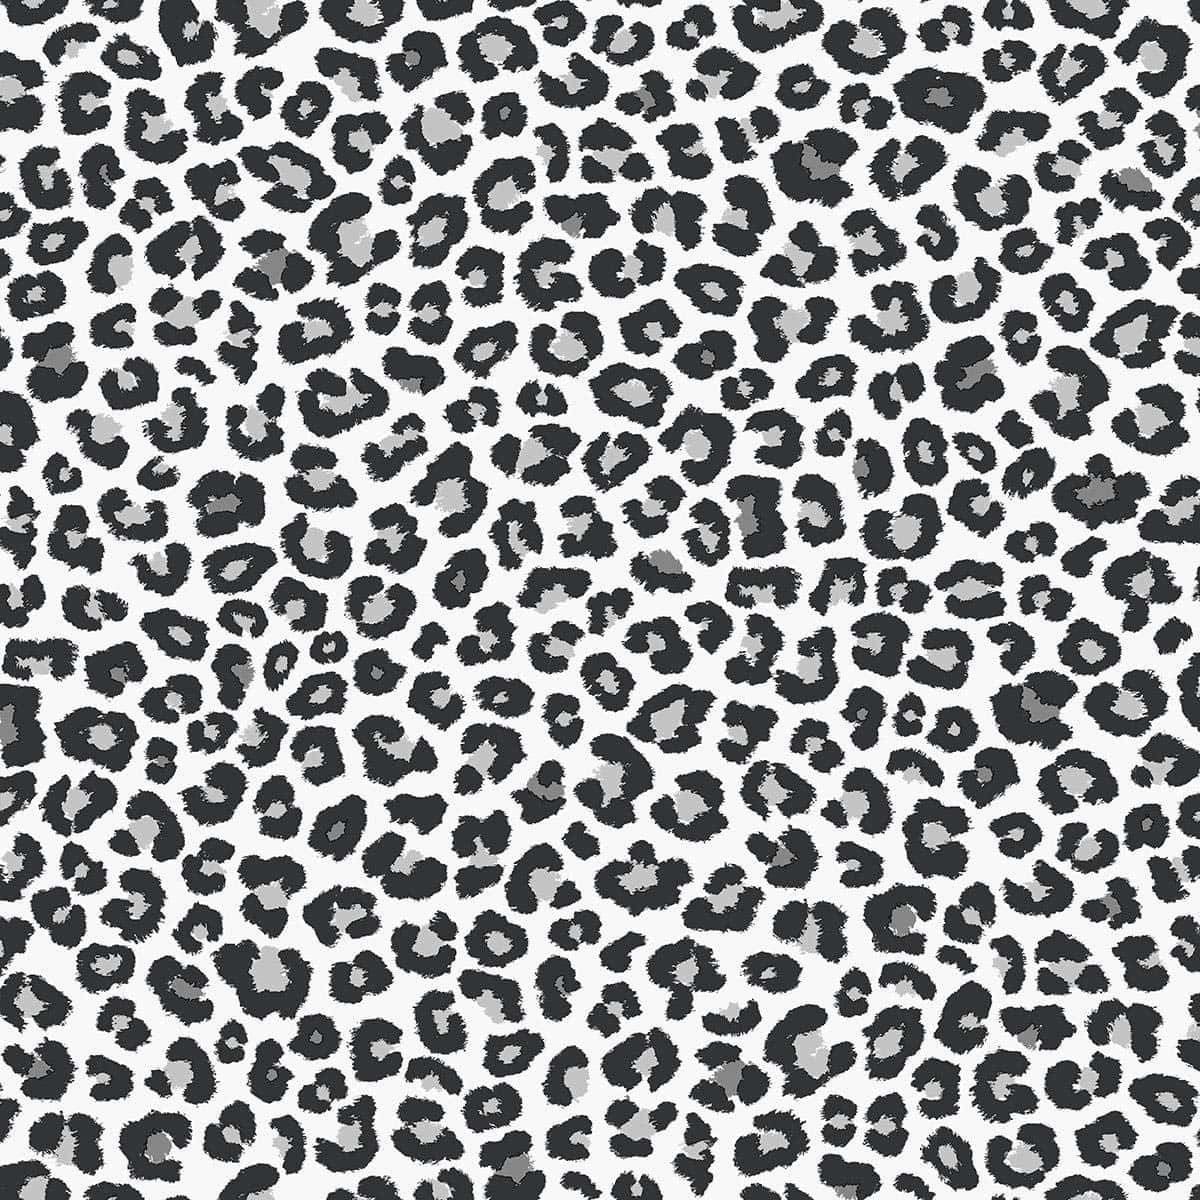 Einmuster Mit Leopardenflecken In Schwarz-weiß. Wallpaper